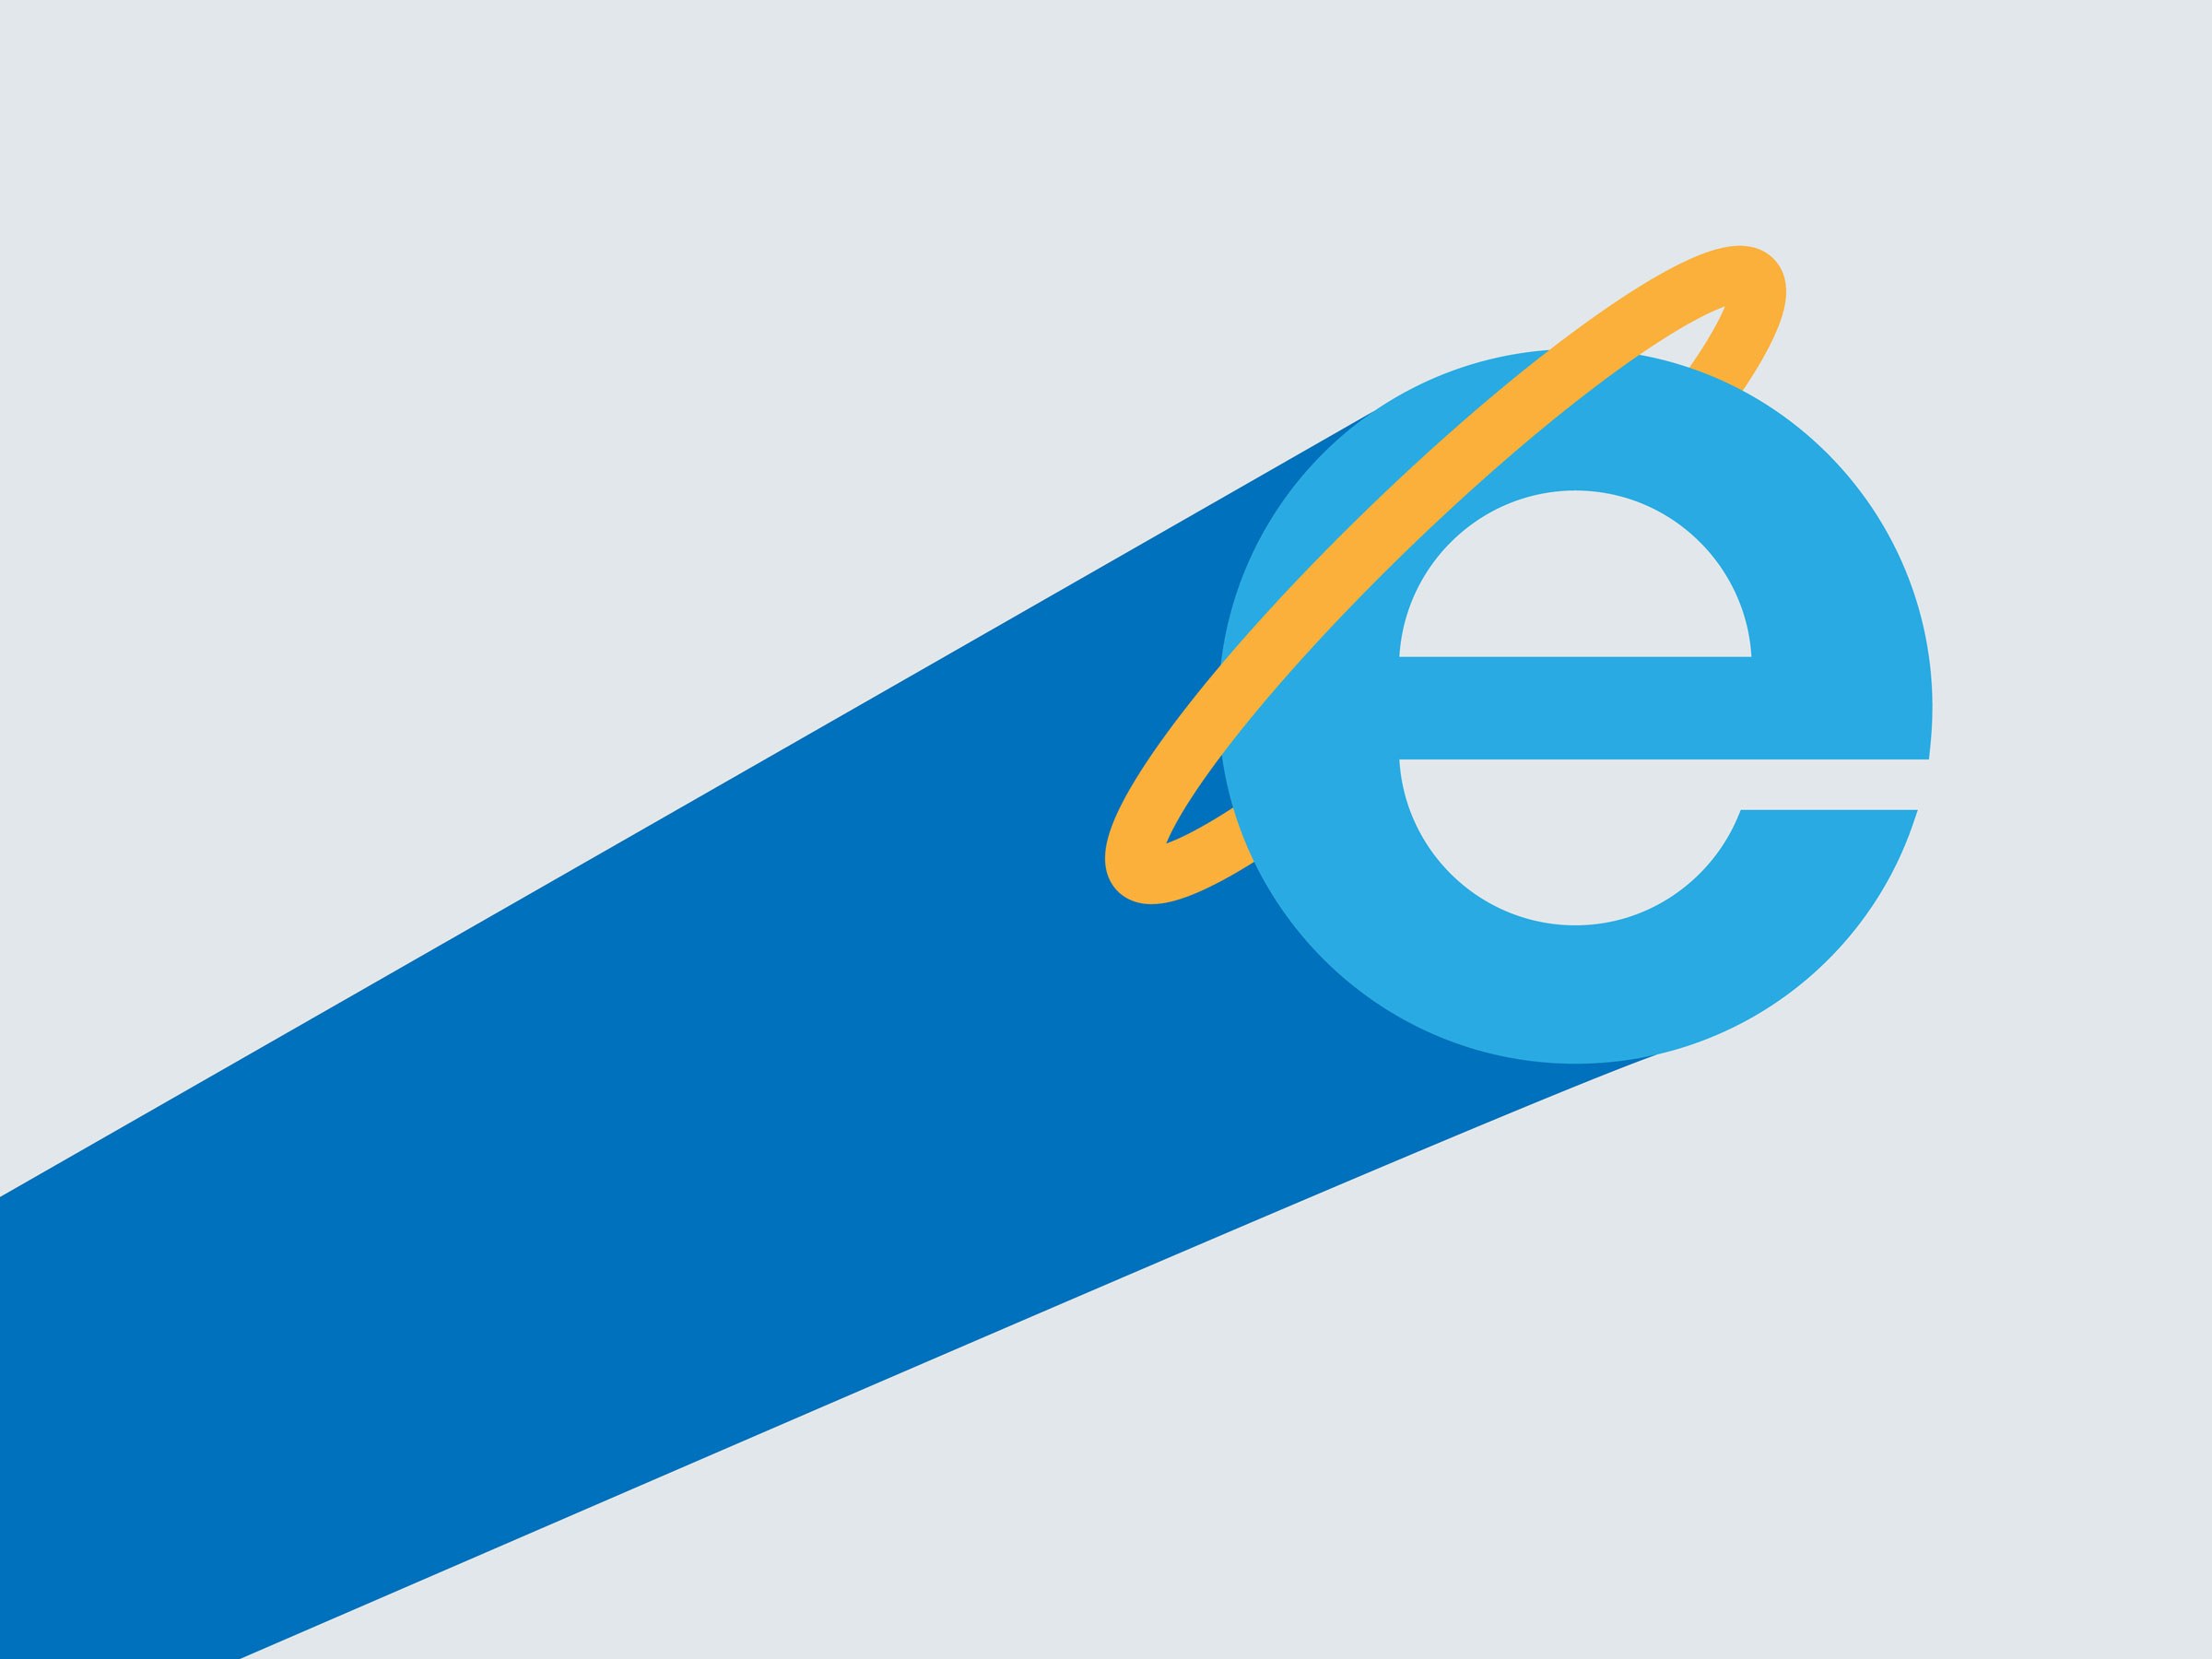 Browserul Microsoft Edge, pregătit pentru utilizare în afaceri și întreprinderi, dezvăluie o foaie de parcurs dezvăluită